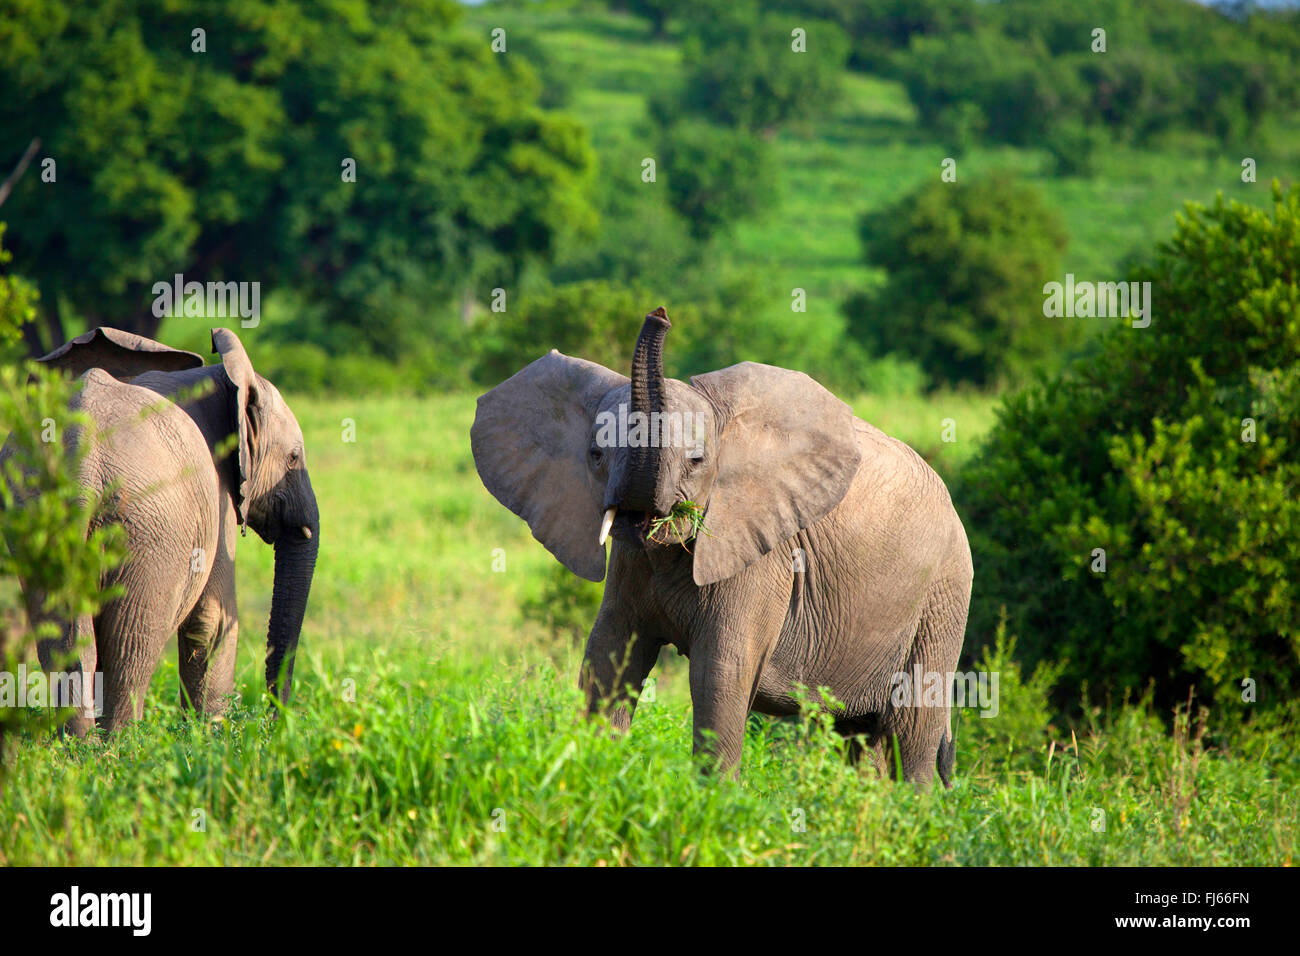 Afrikanischer Elefant (Loxodonta Africana), grasende Elefanten mit bedrohlichen Geste, Südafrika Stockfoto